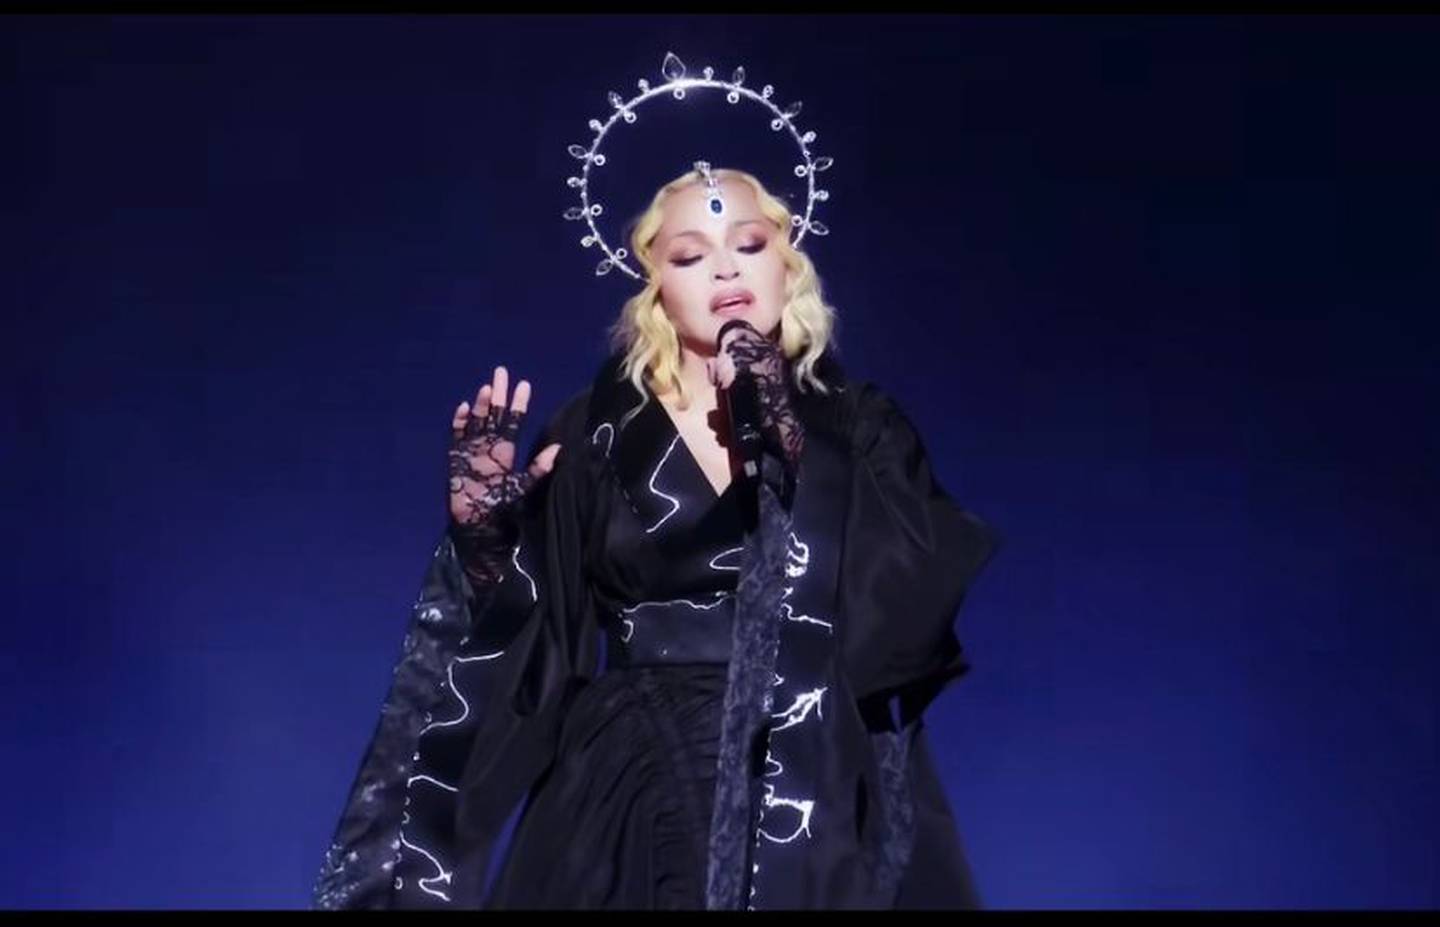 Madonna intepretó más de 40 canciones en el primer concierto de su gira 'Celebration Tour', que presentó en Londres.